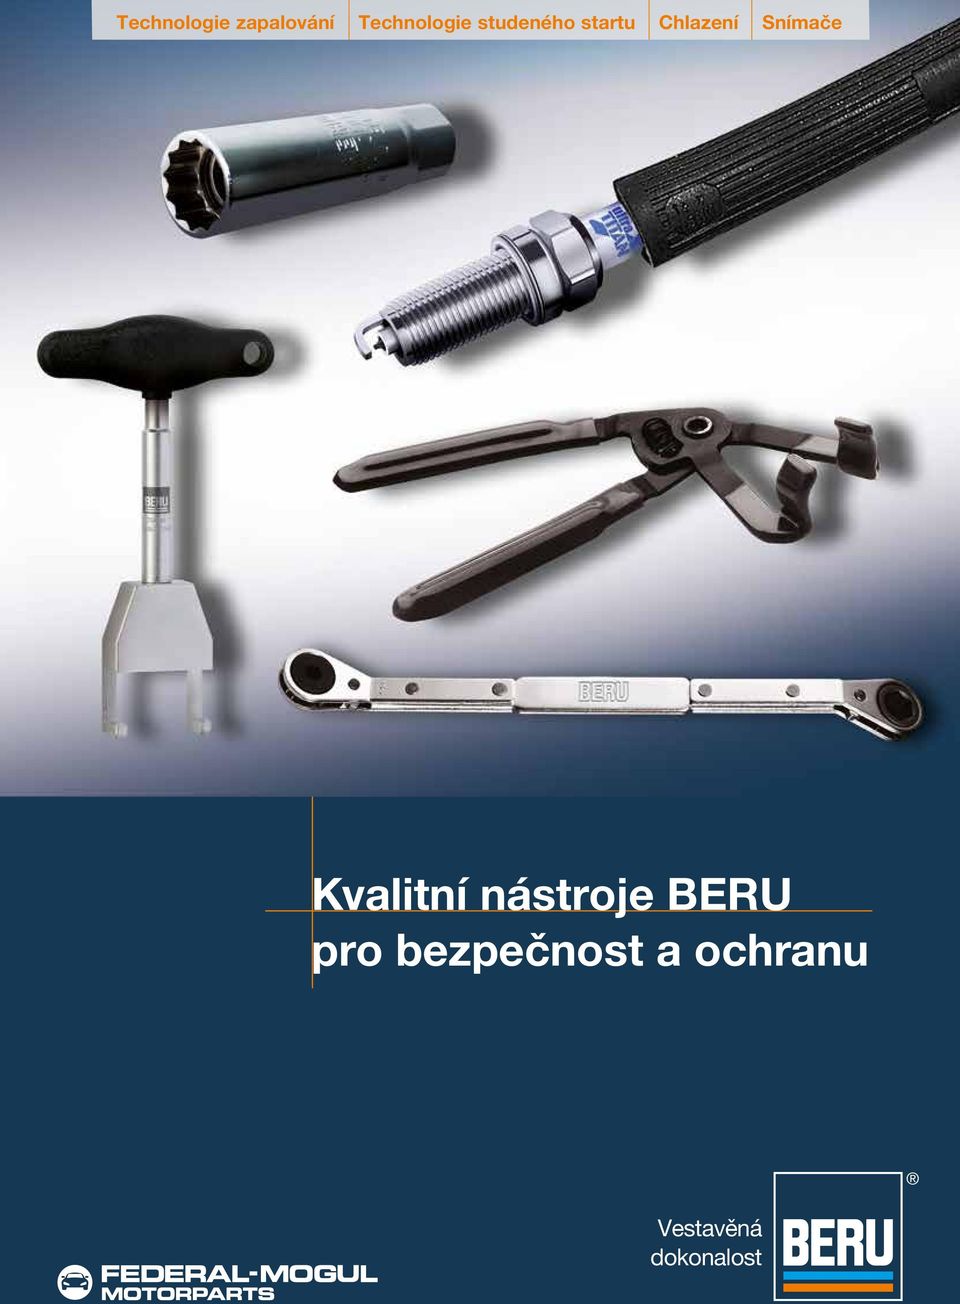 Kvalitní nástroje BERU pro bezpečnost a